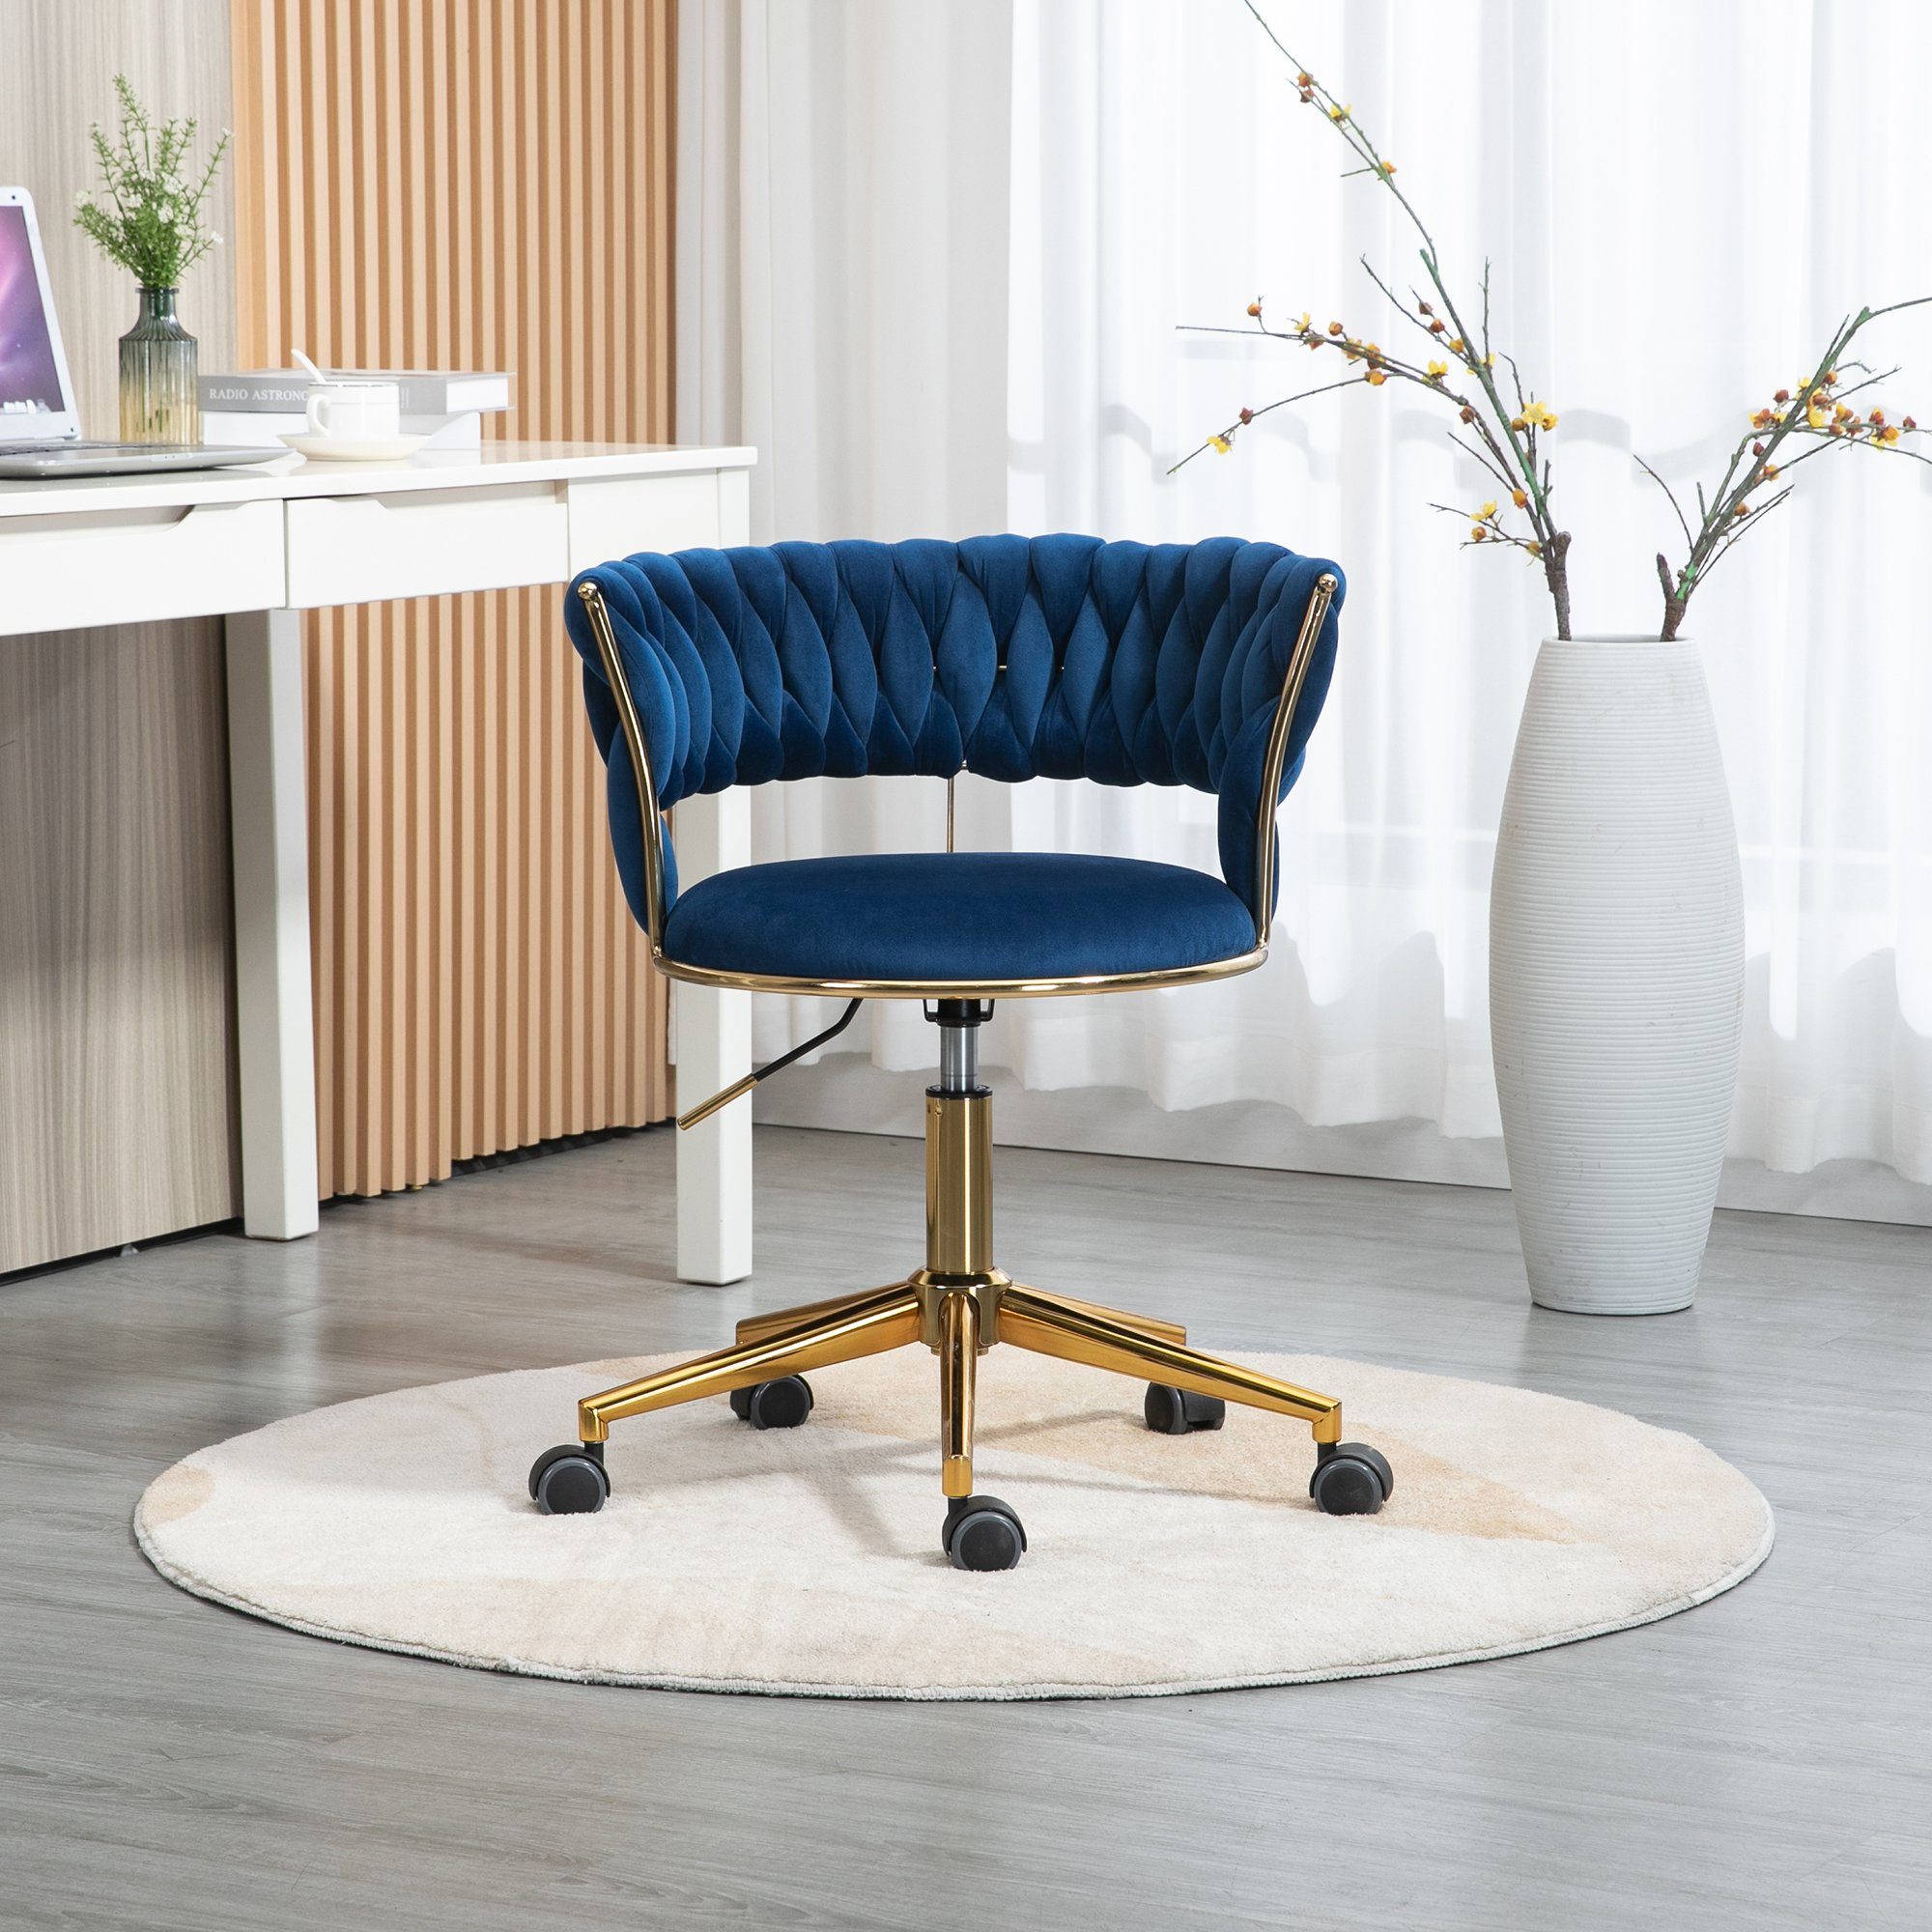 Odikalo Drehstuhl Bürostuhl Freizeit Make-up Samt goldene Beine 360° drehbar mehrfarbig Blau